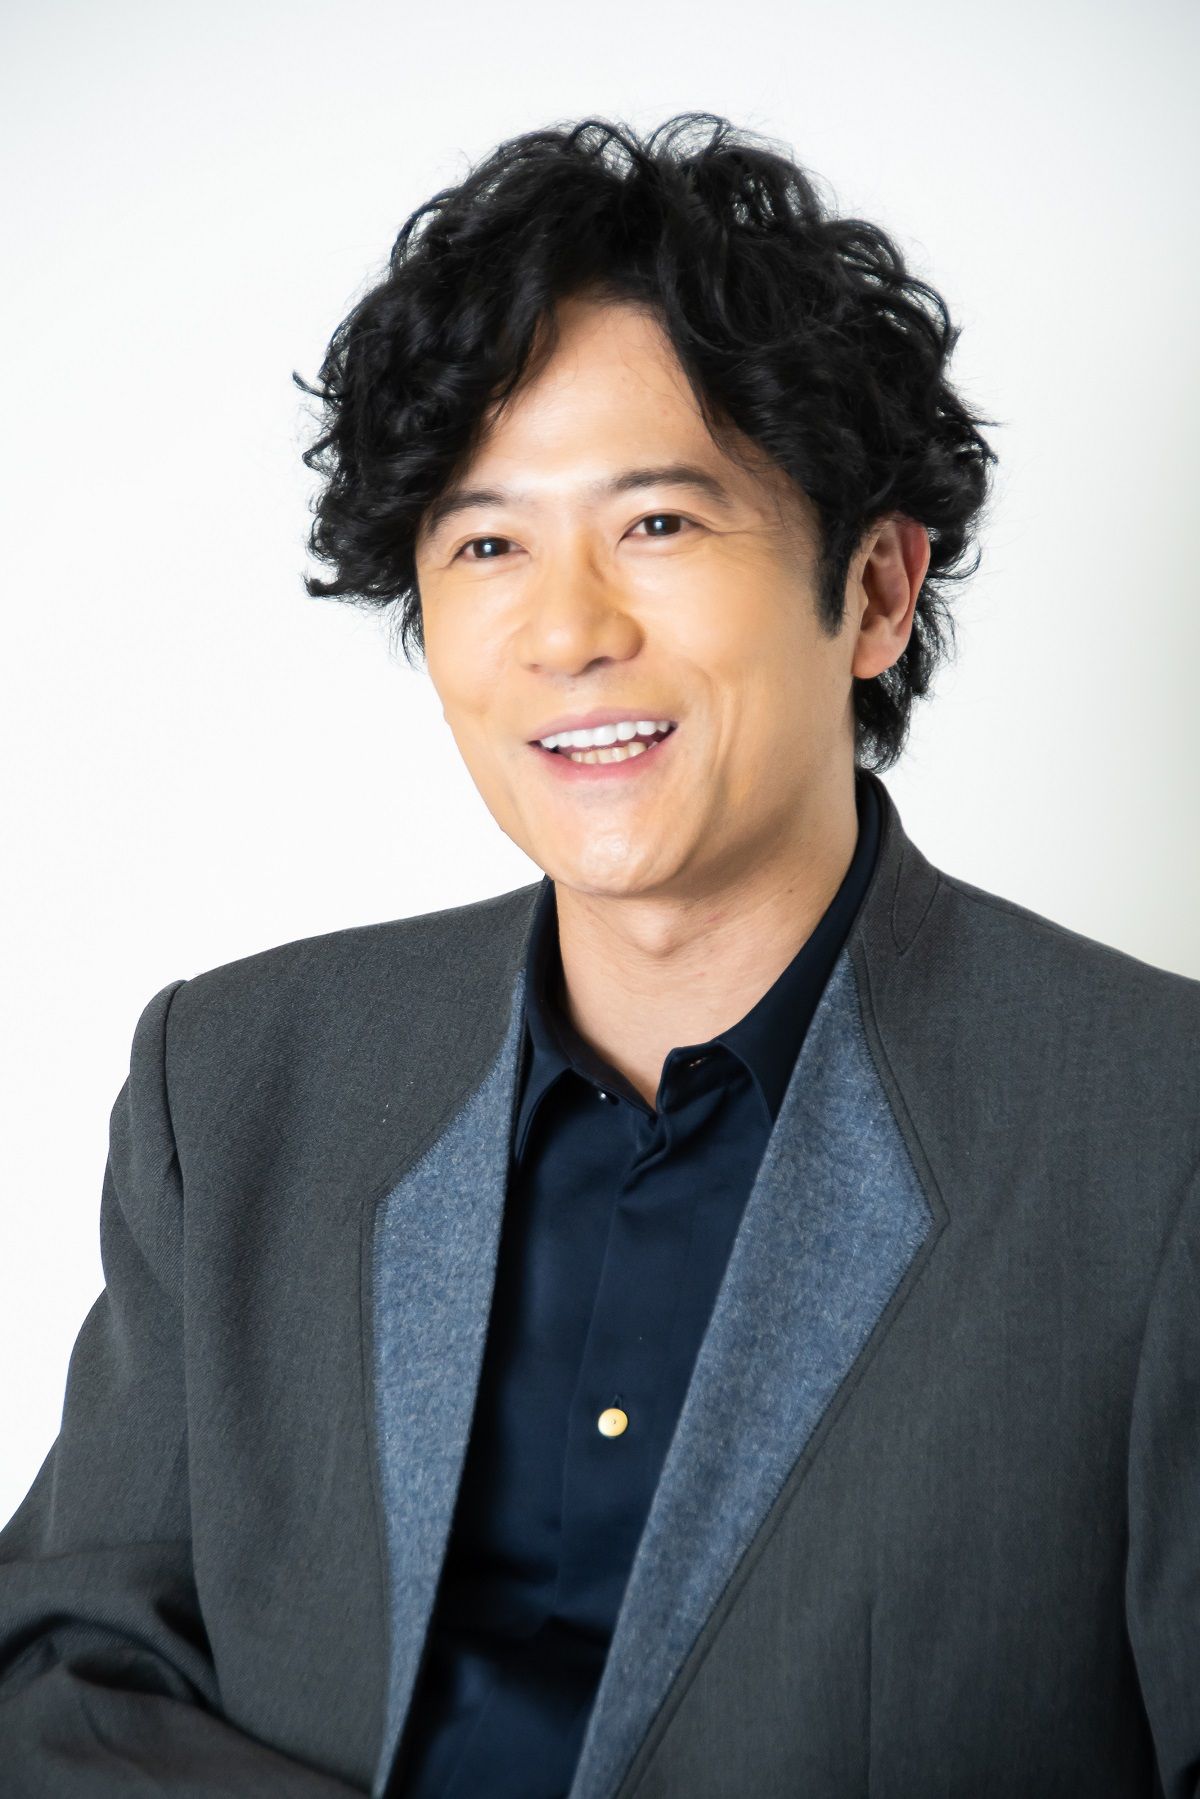 俳優 稲垣吾郎 47歳の今 を激白 1 仕事に鮮度をなくしちゃいけない と思ってる 日刊大衆